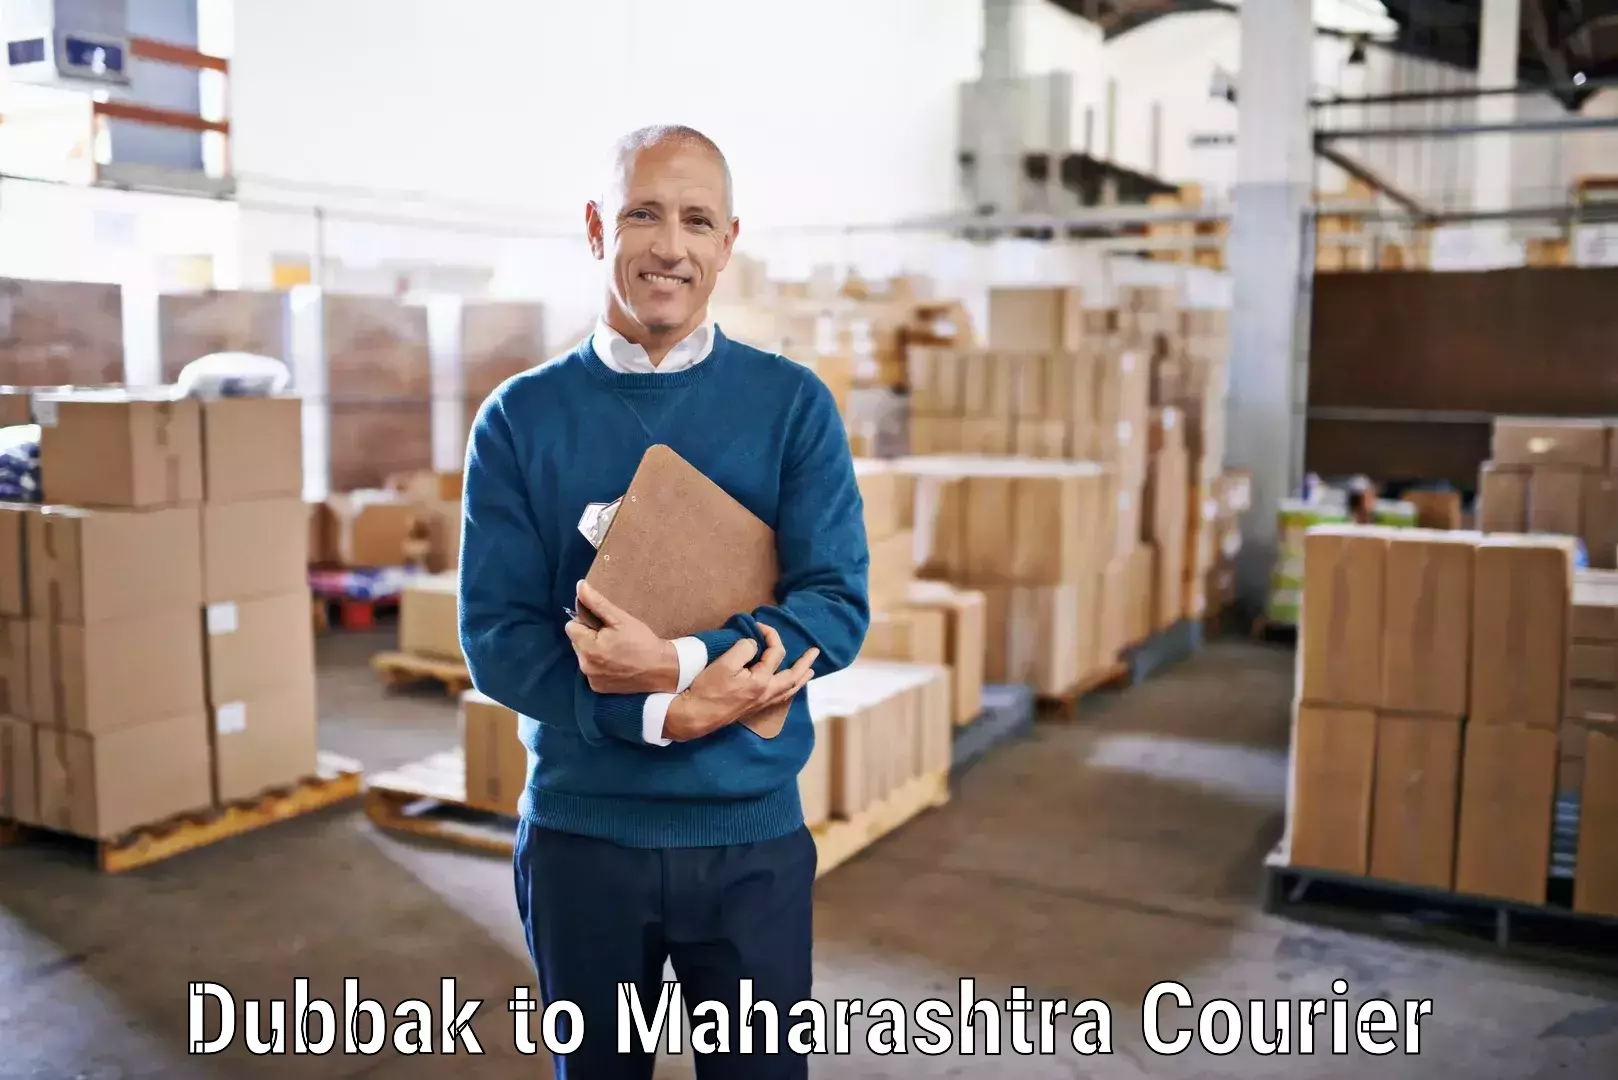 Global freight services Dubbak to Maharashtra